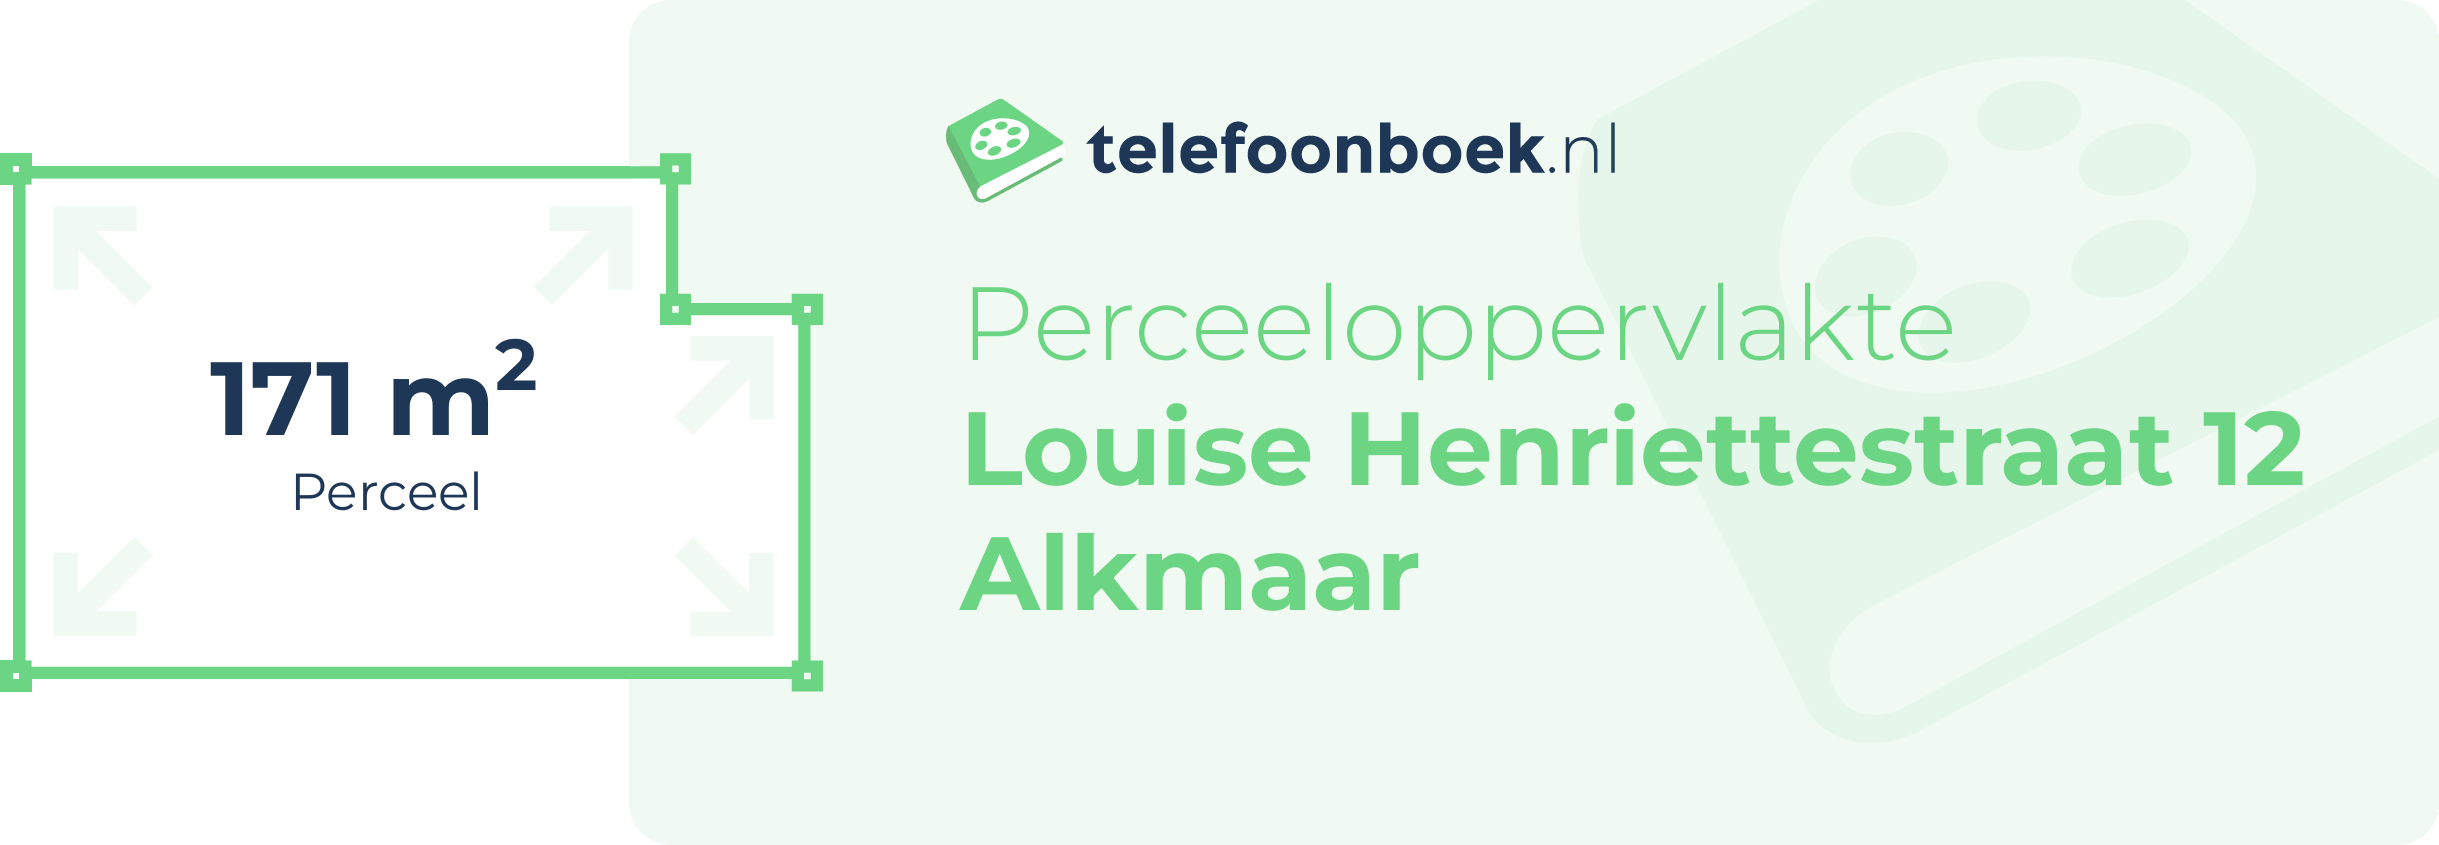 Perceeloppervlakte Louise Henriettestraat 12 Alkmaar